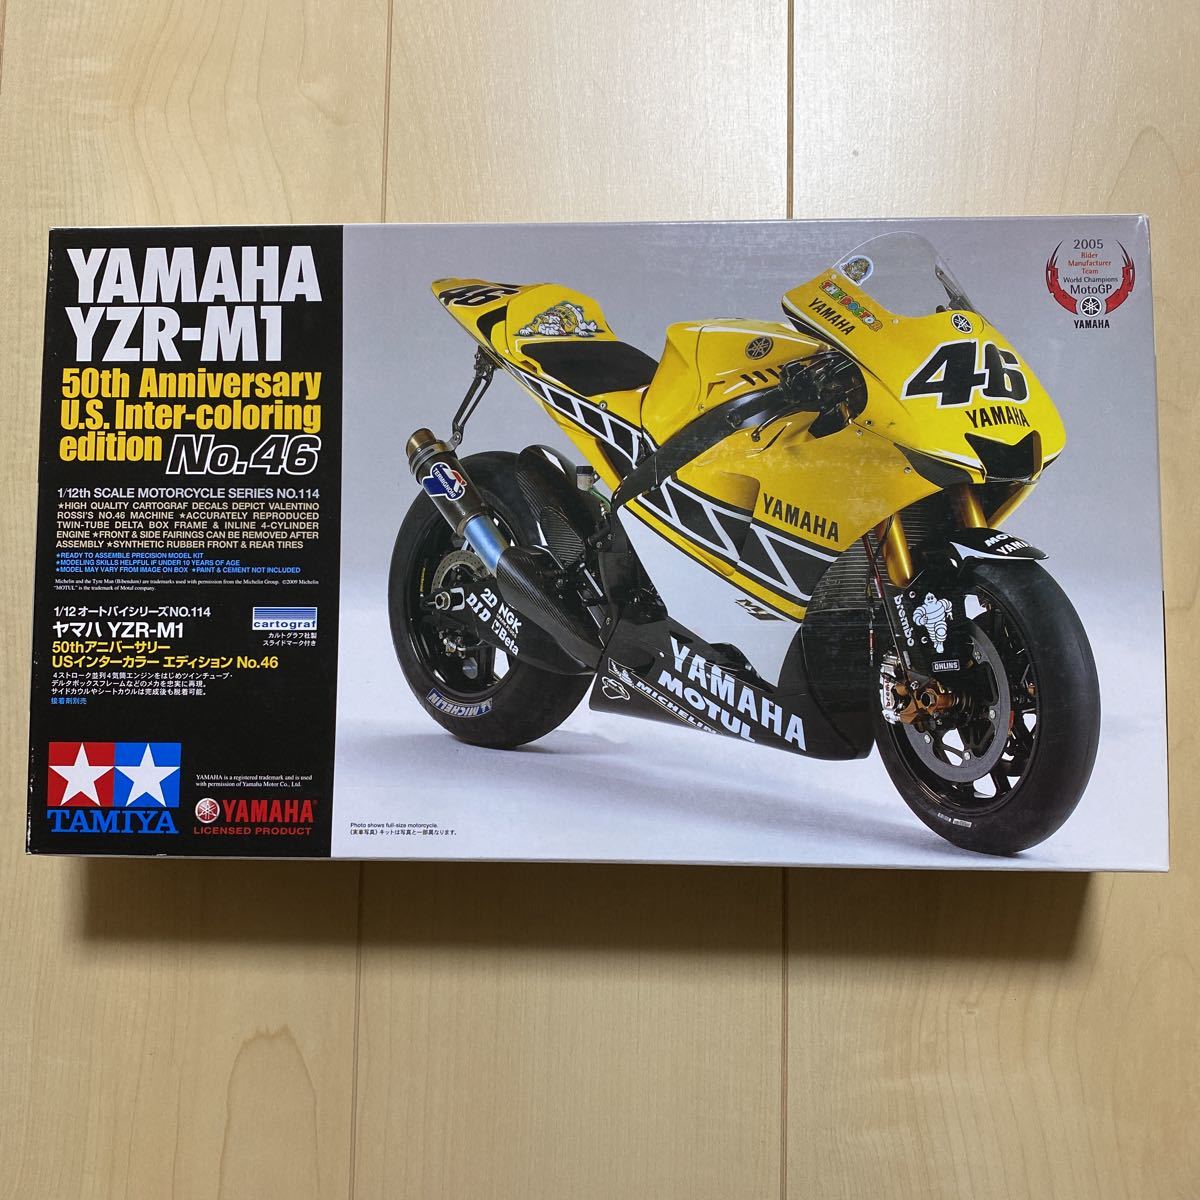 新品 タミヤ 1/12 ヤマハ YZR-M1 50th アニバーサリー USインターカラーエディション No.46 ロッシ ② MotoGP RC213V マルケス